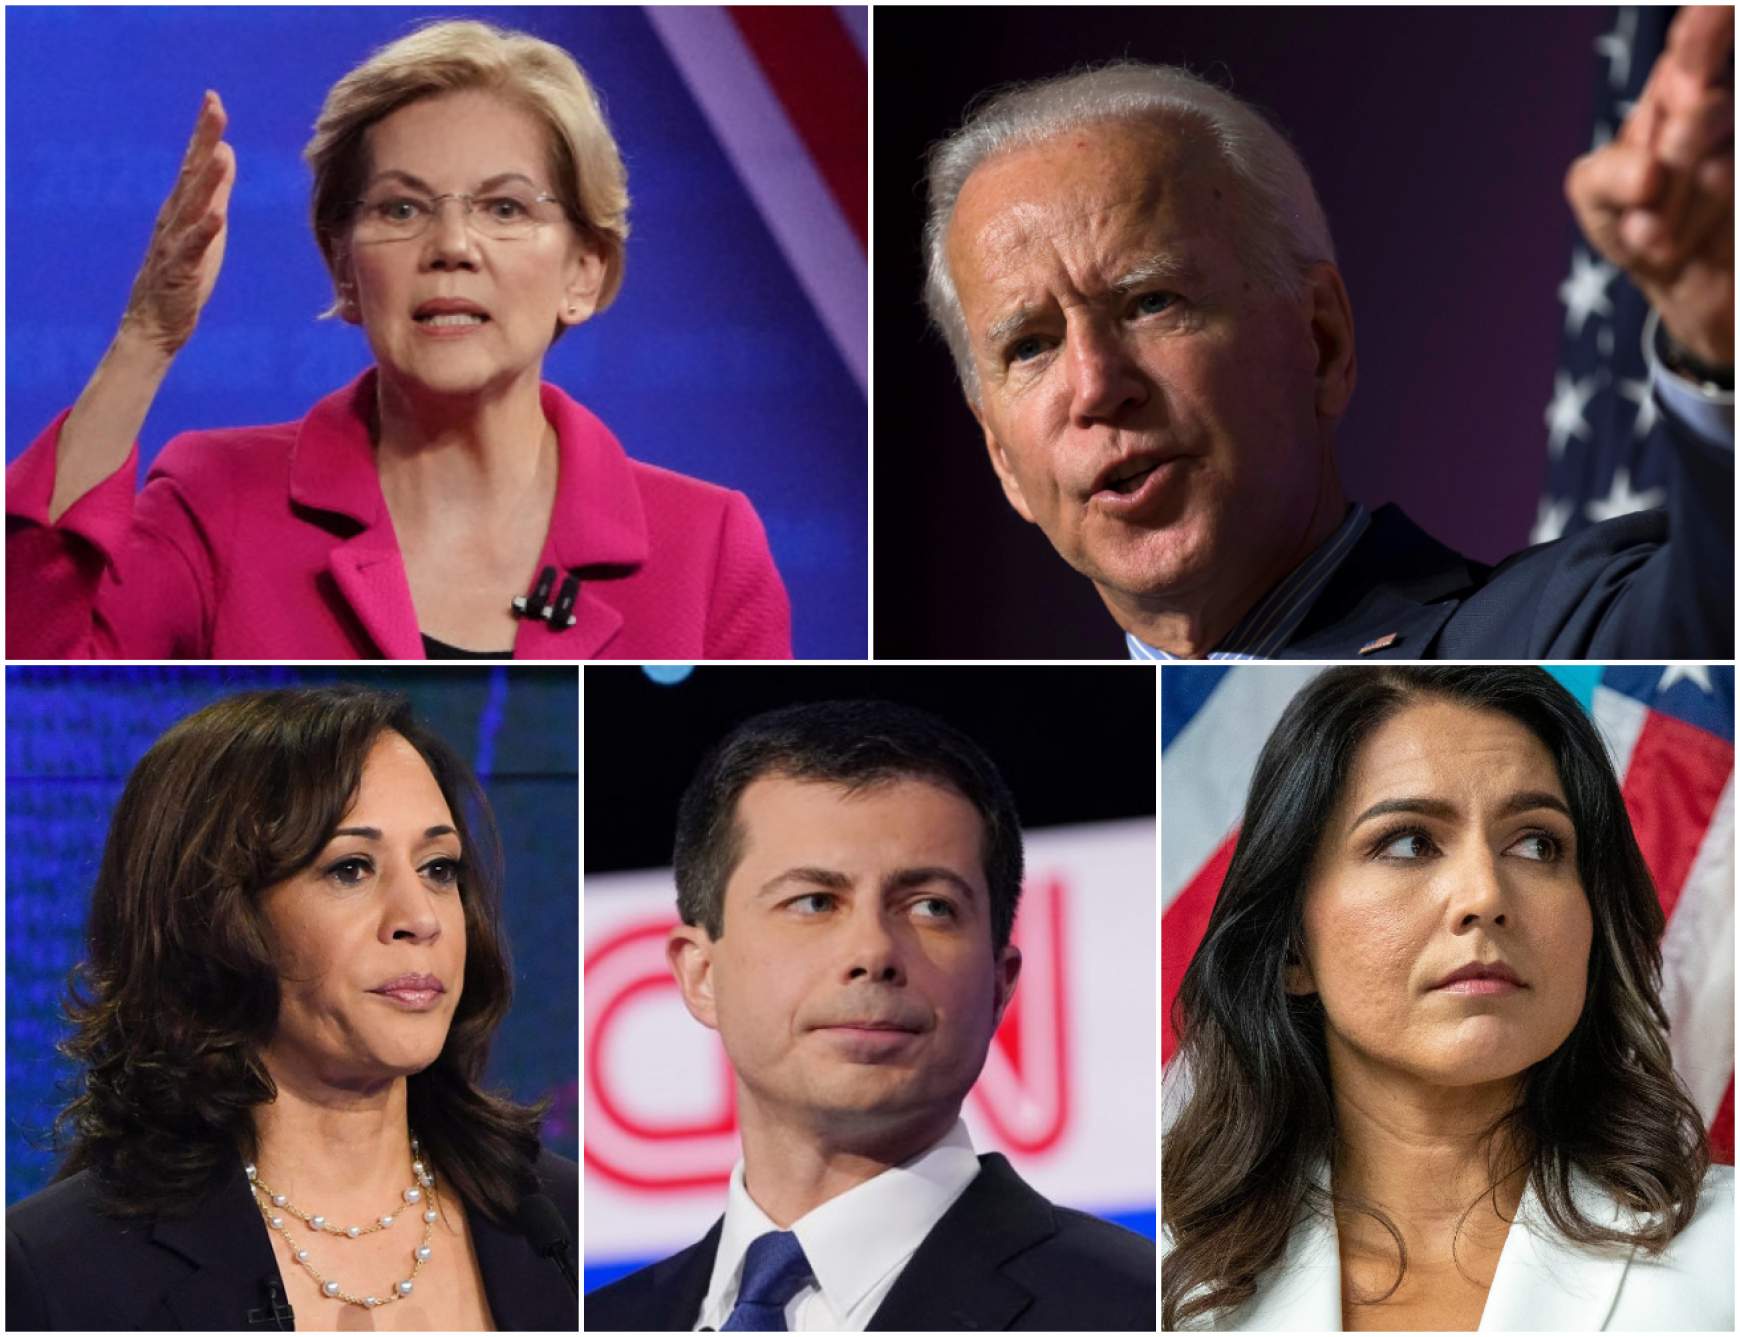 Fent: Elizabeth Warren, Joe Biden, Lent: Kamala Harris, Pete Buttigieg, Tulsi Gabbard